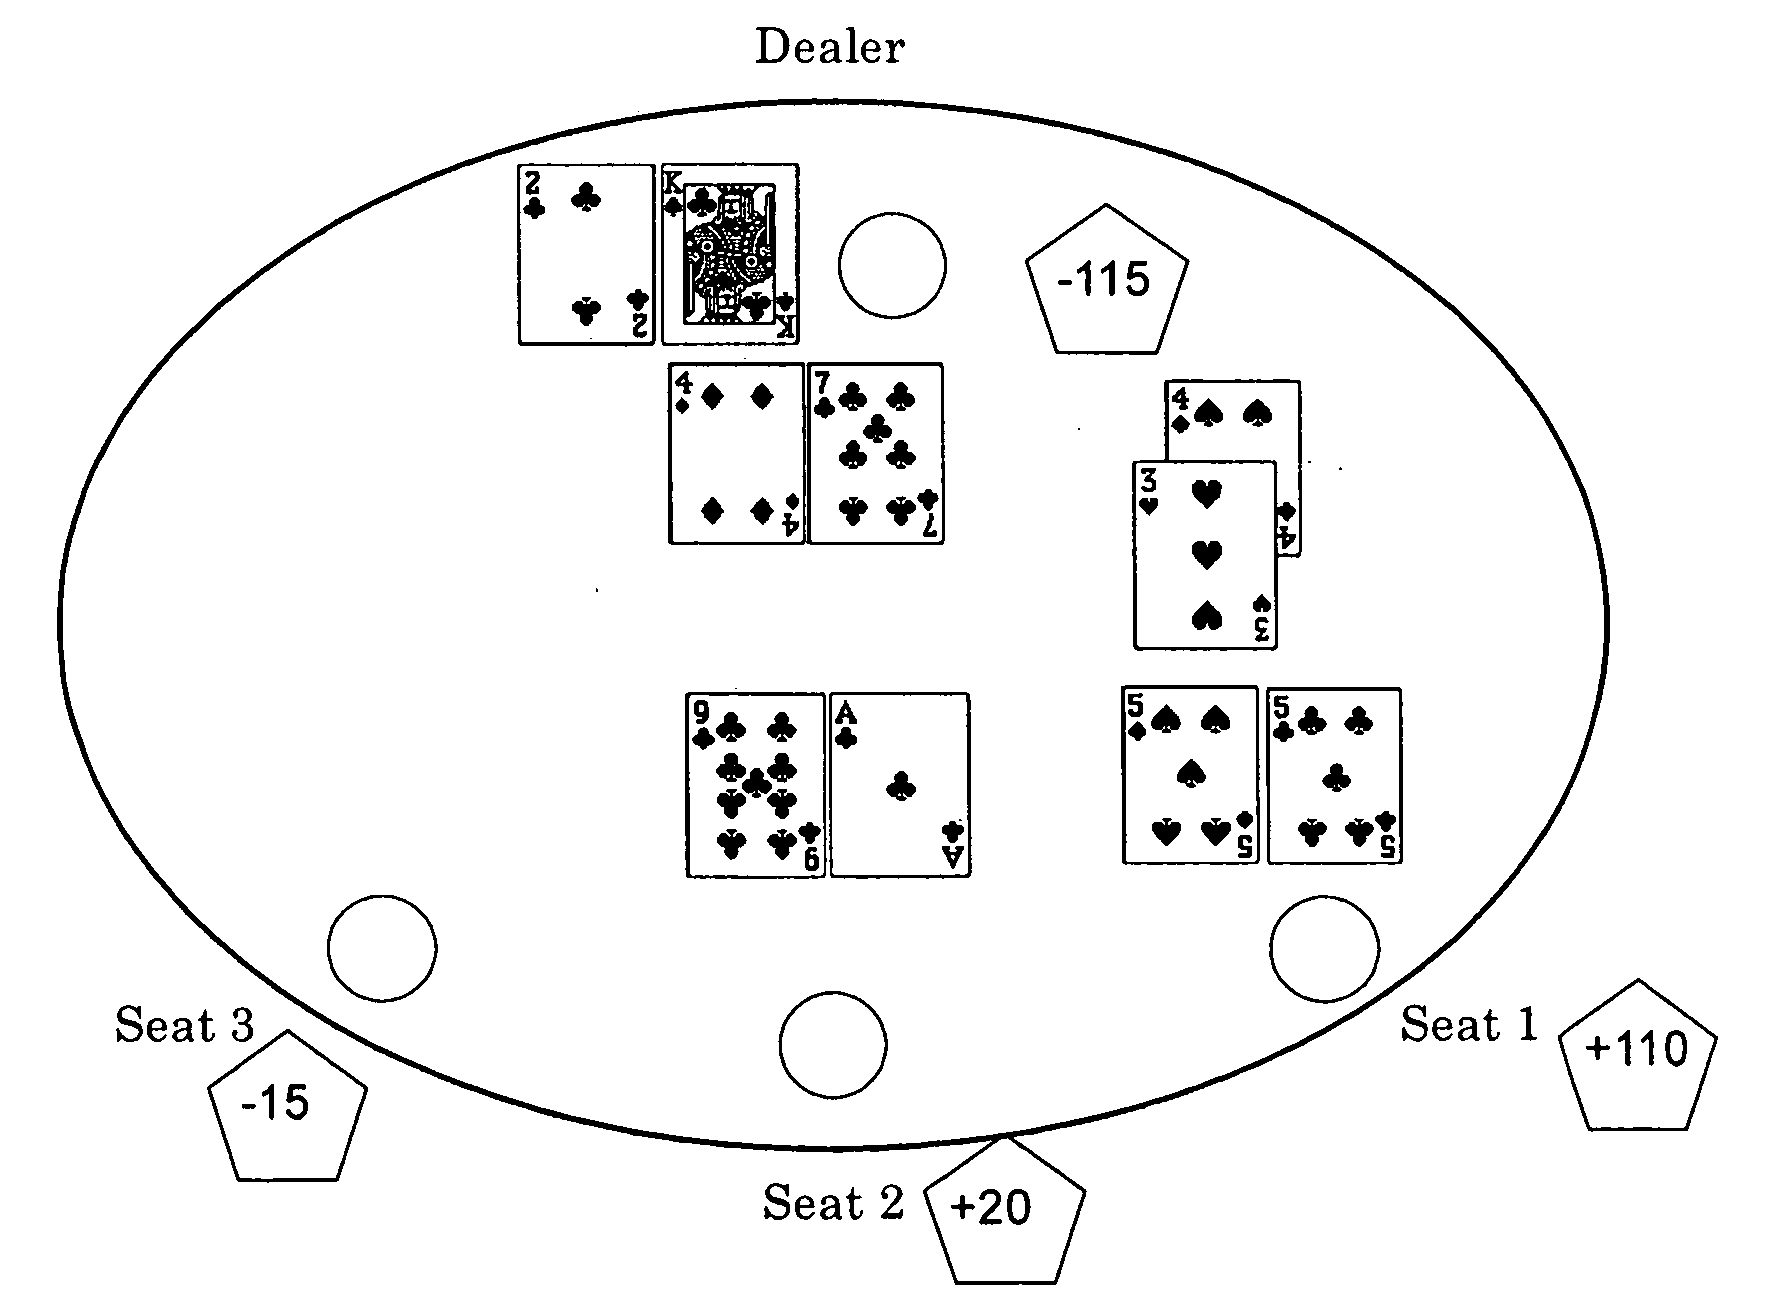 Active dealer version of blackjack